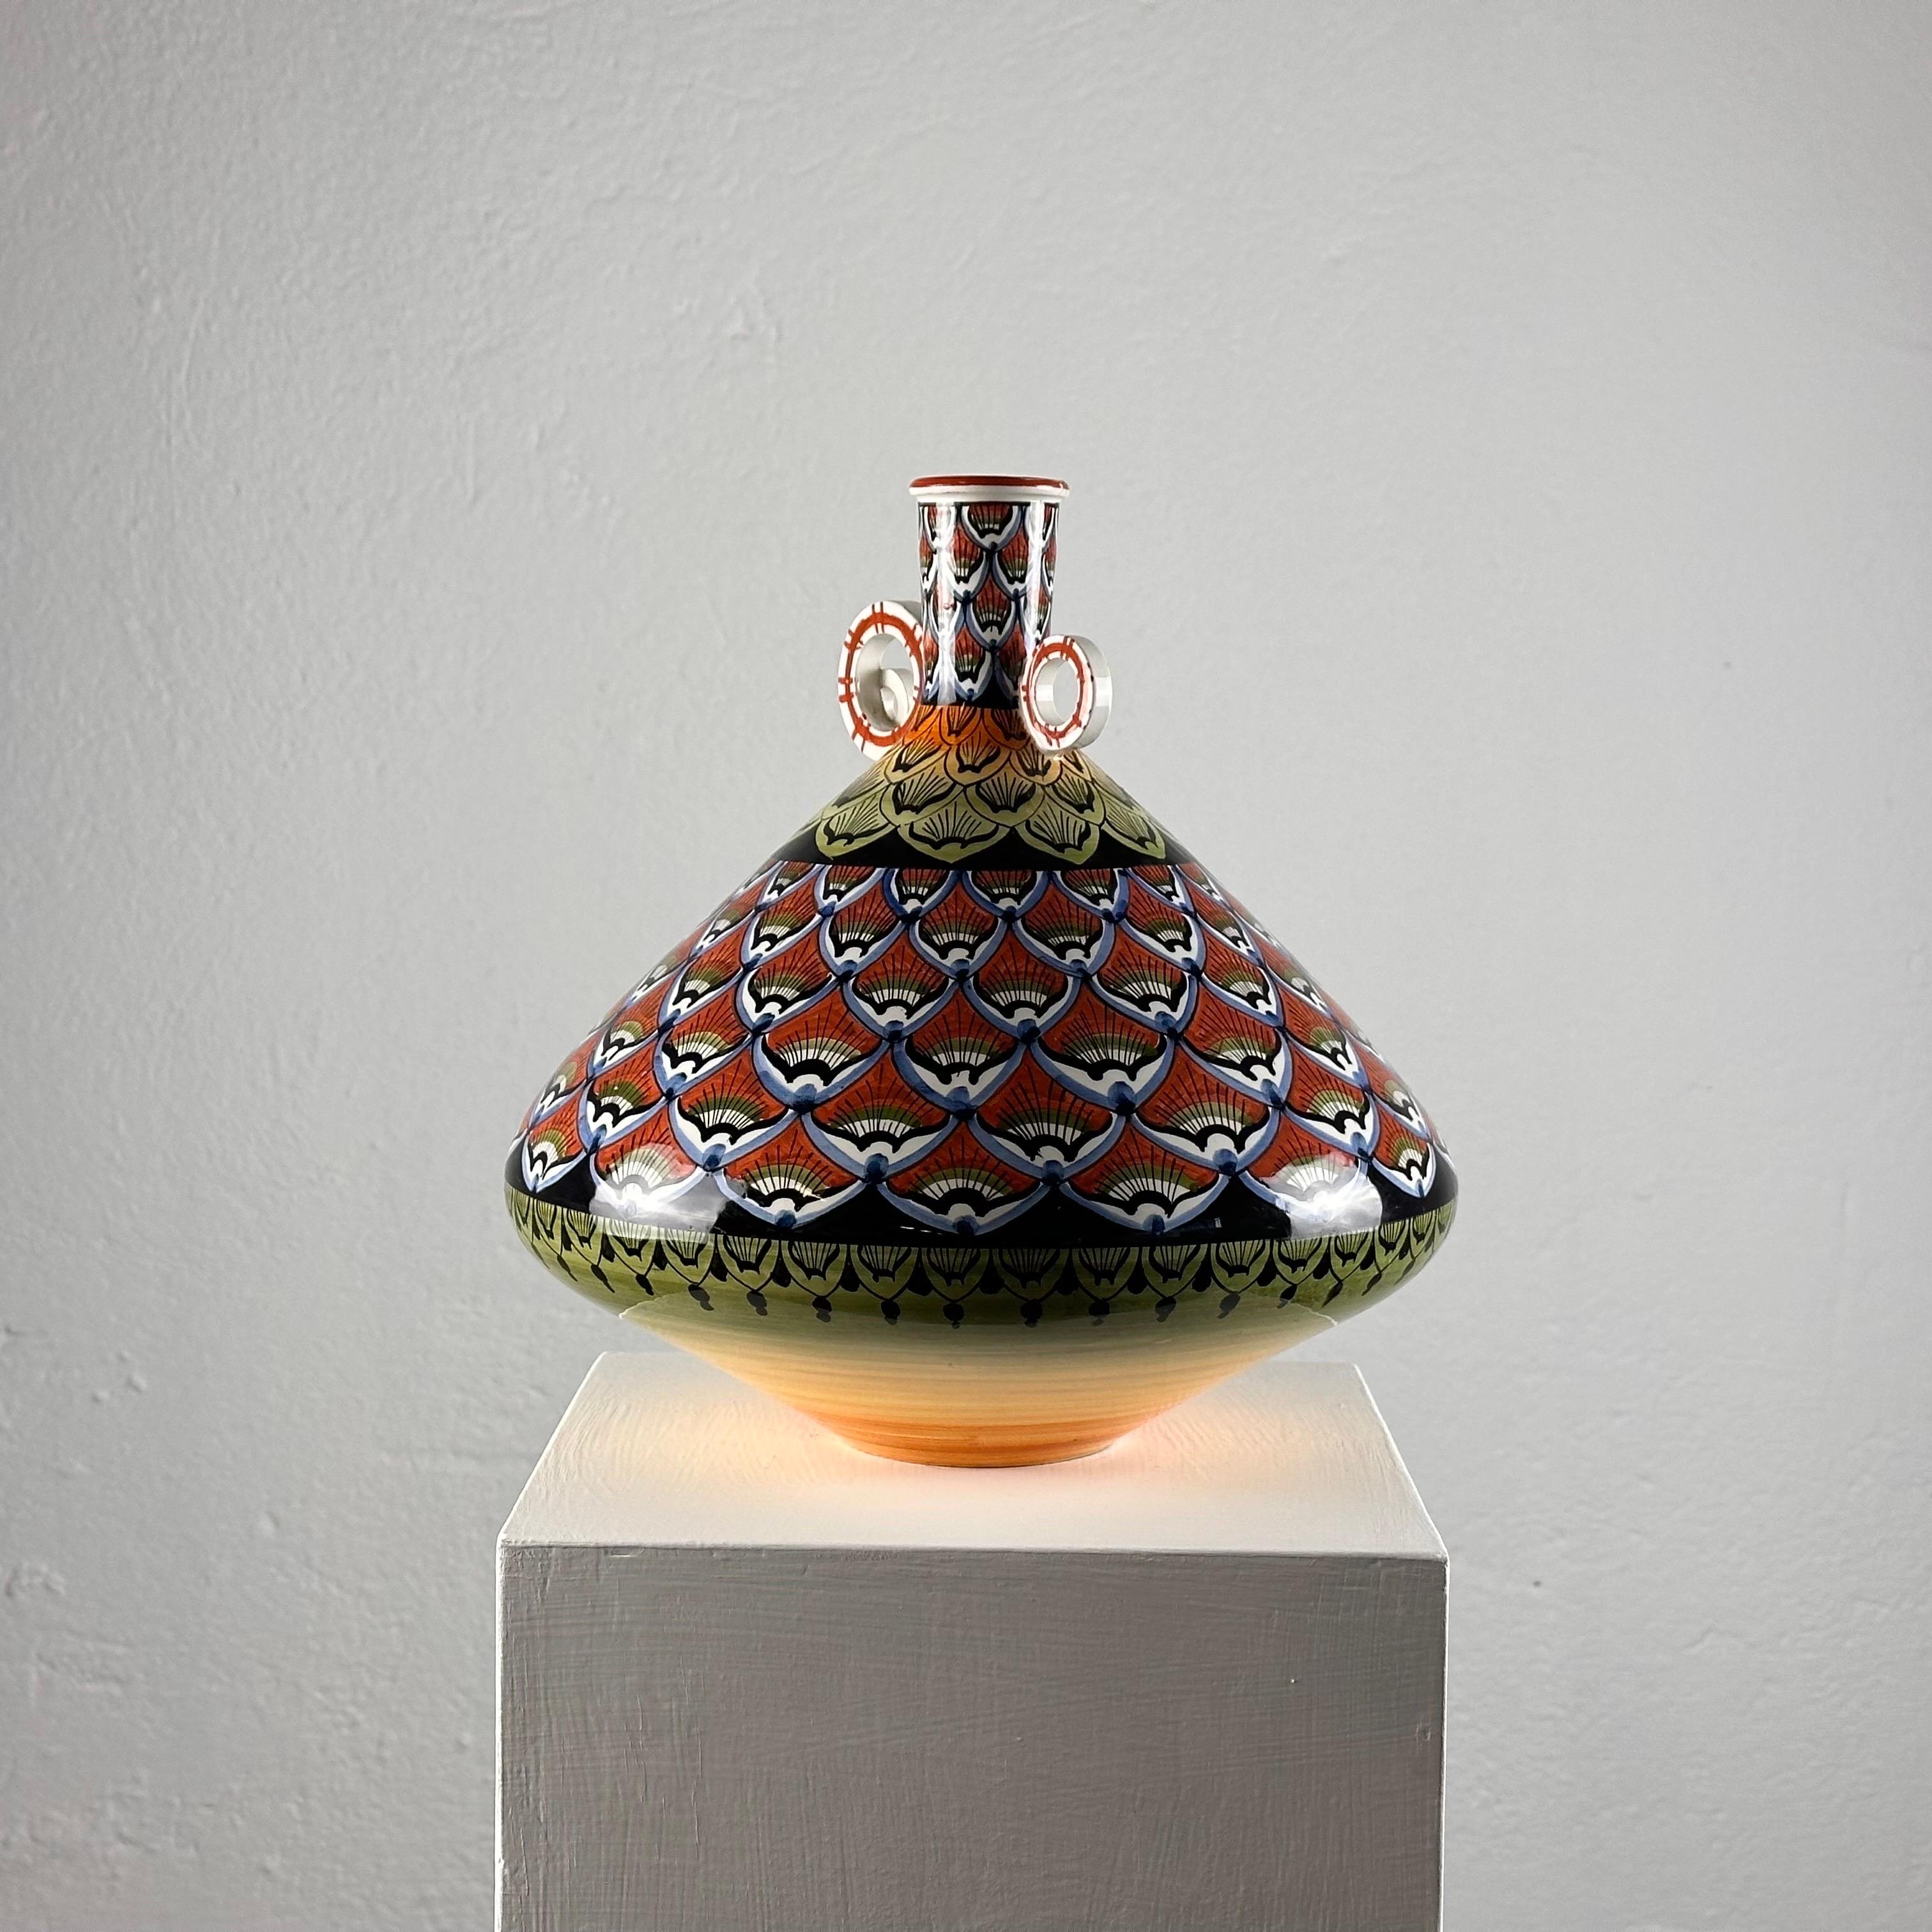 
Transportez-vous dans l'ère vibrante des années 1970 avec ce vase en céramique peint à la main. D'une hauteur de 30 cm et d'un diamètre de 30 cm, cette pièce importante témoigne de l'art de l'époque.

Chaque centimètre de ce vase est orné d'une